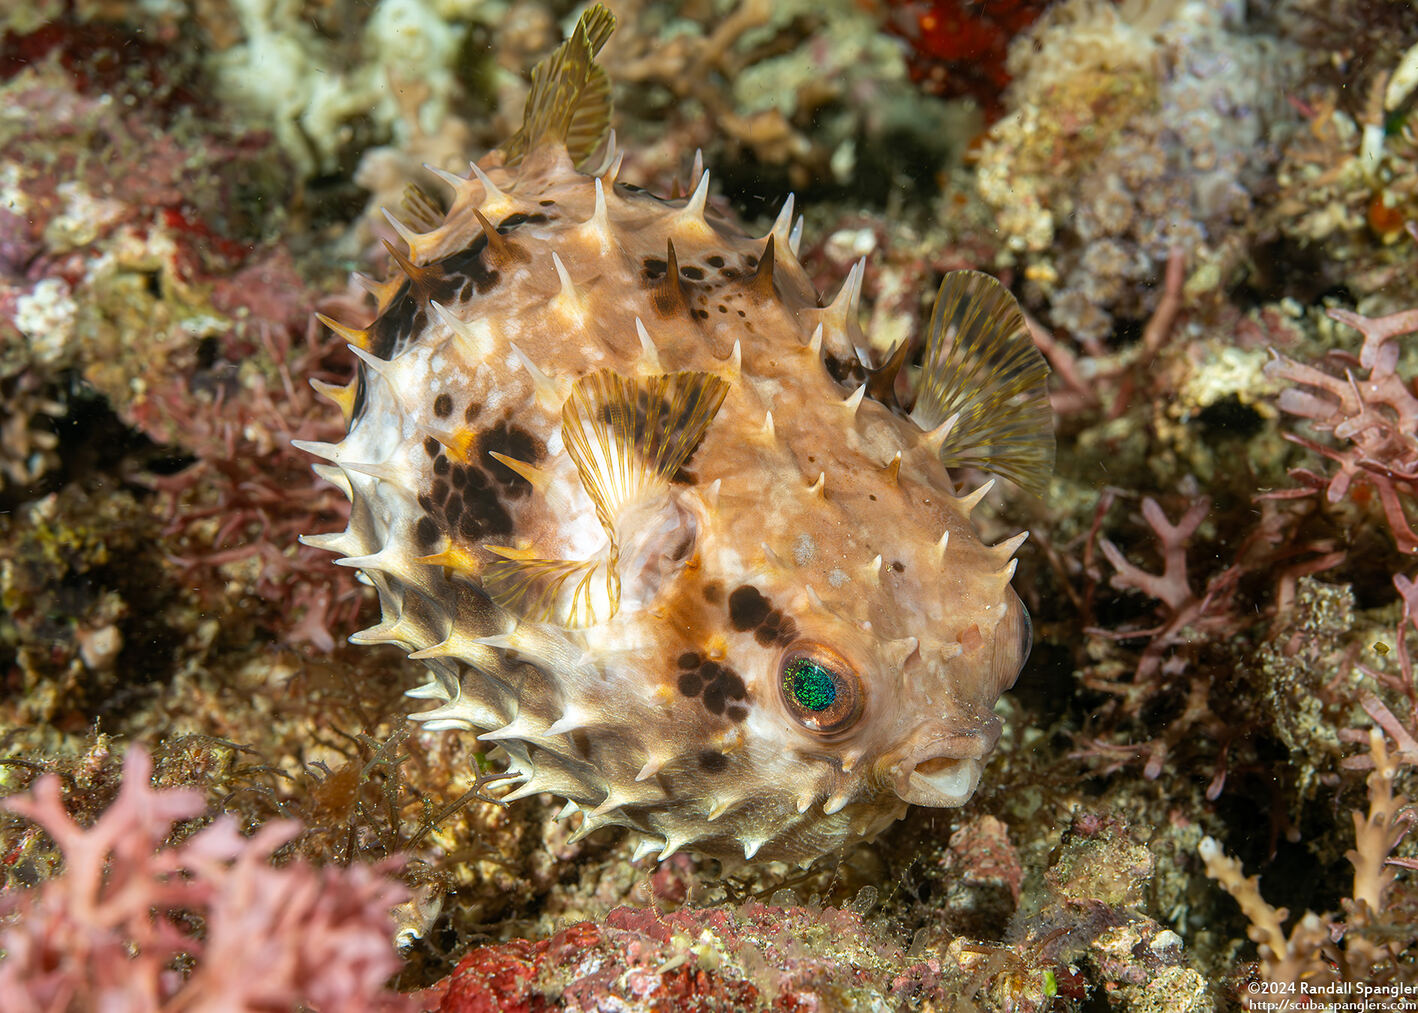 Cyclichthys orbicularis (Orbicular Burrfish); Puffed up